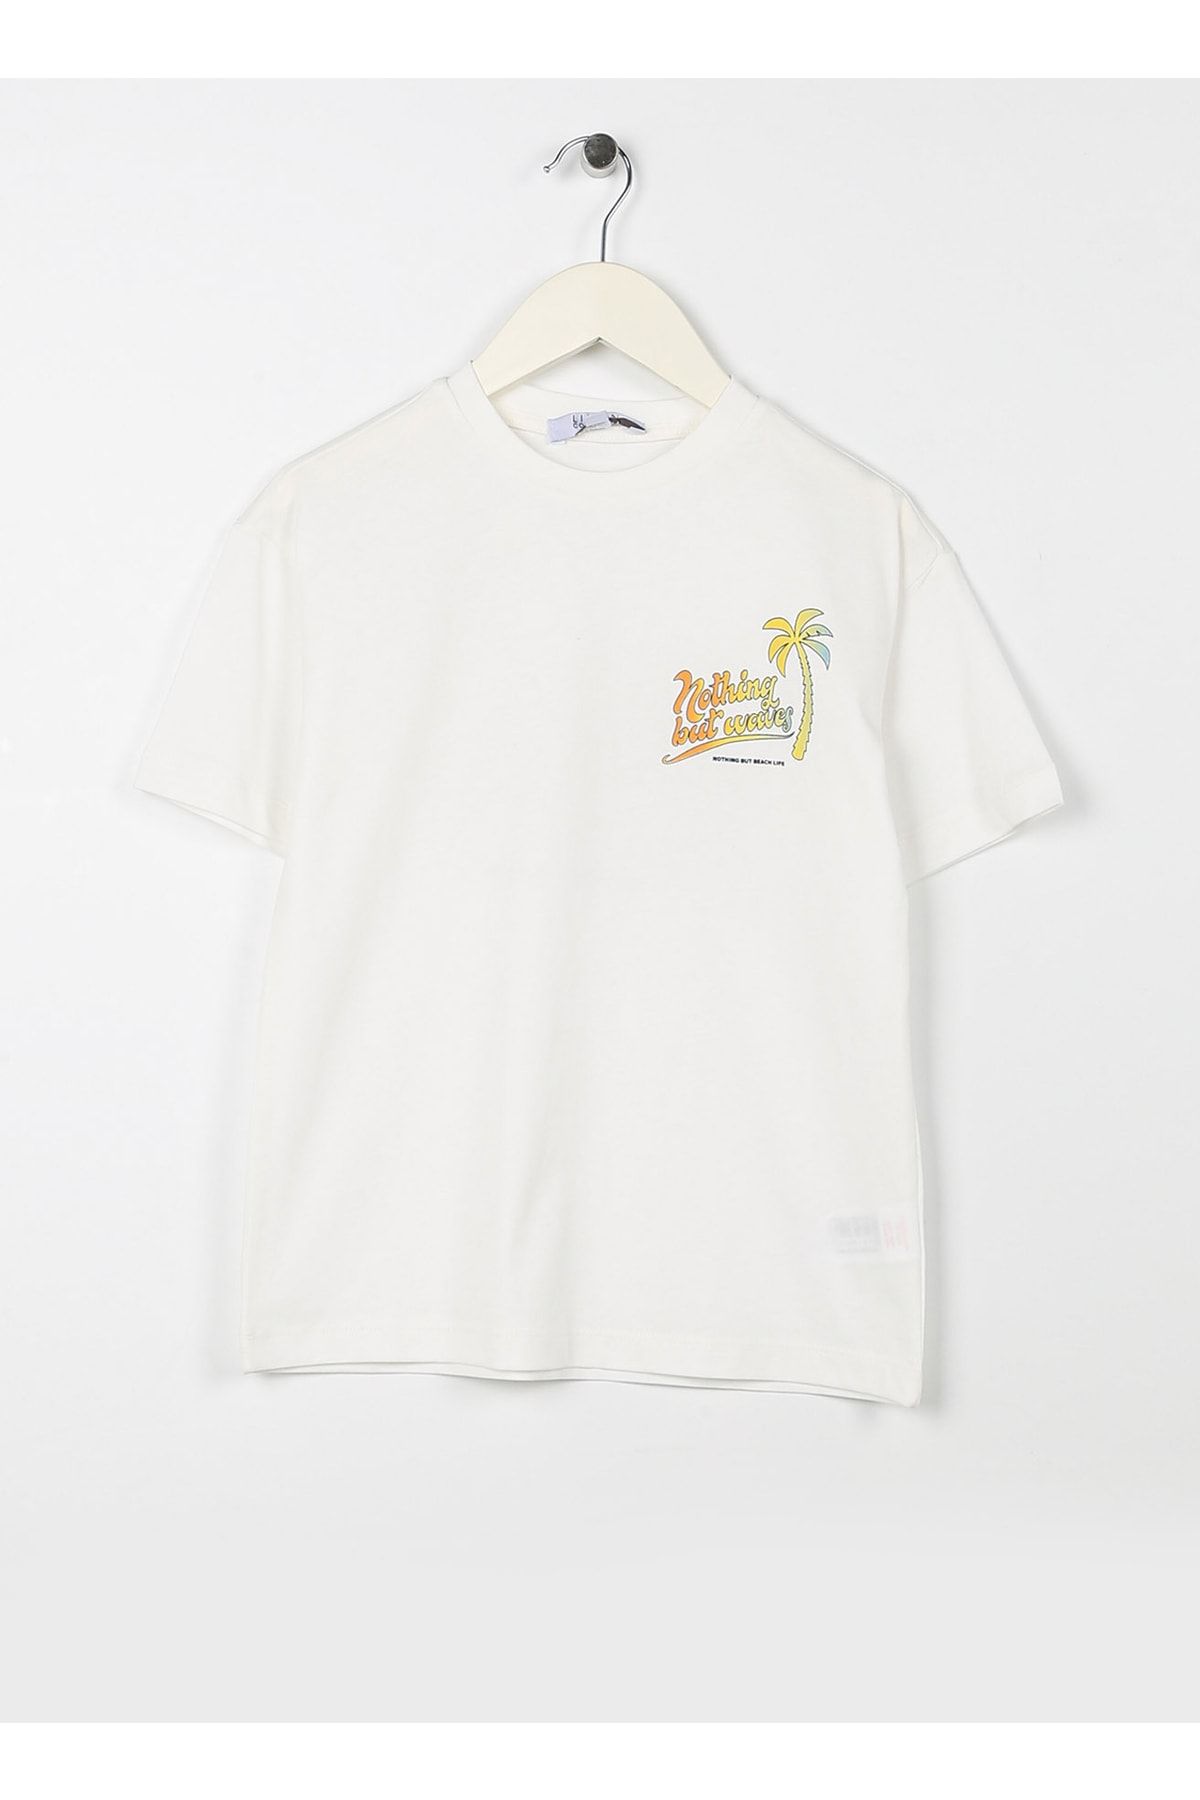 LİMON COMPANY Limon Baskılı Ekru Erkek Çocuk T-shirt Nothıng Boy-23